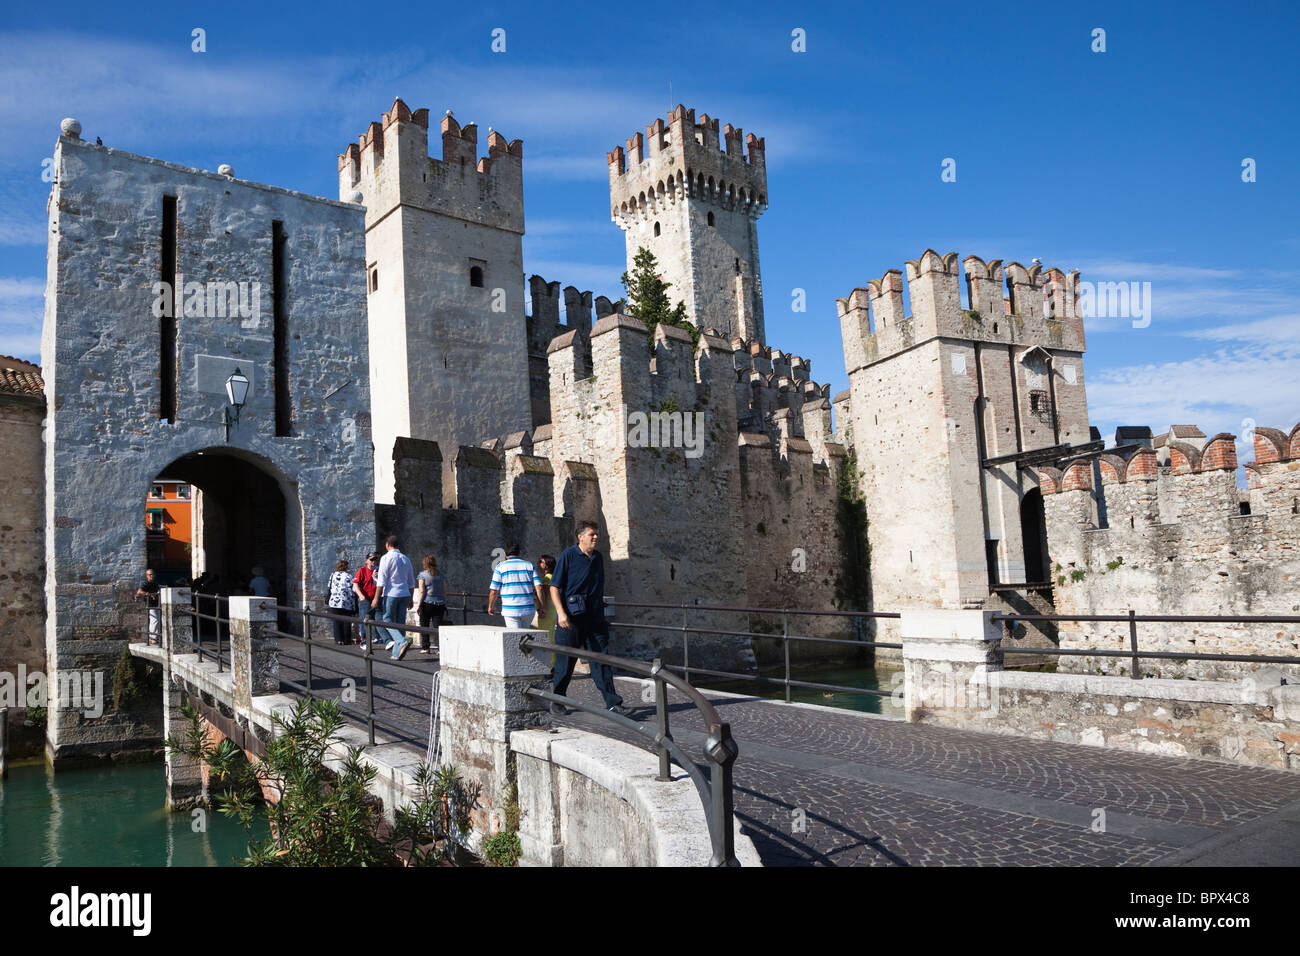 Ingresso alla Rocca Scaligera, Castello di Sirmione sul lago di Garda, Italia Foto Stock